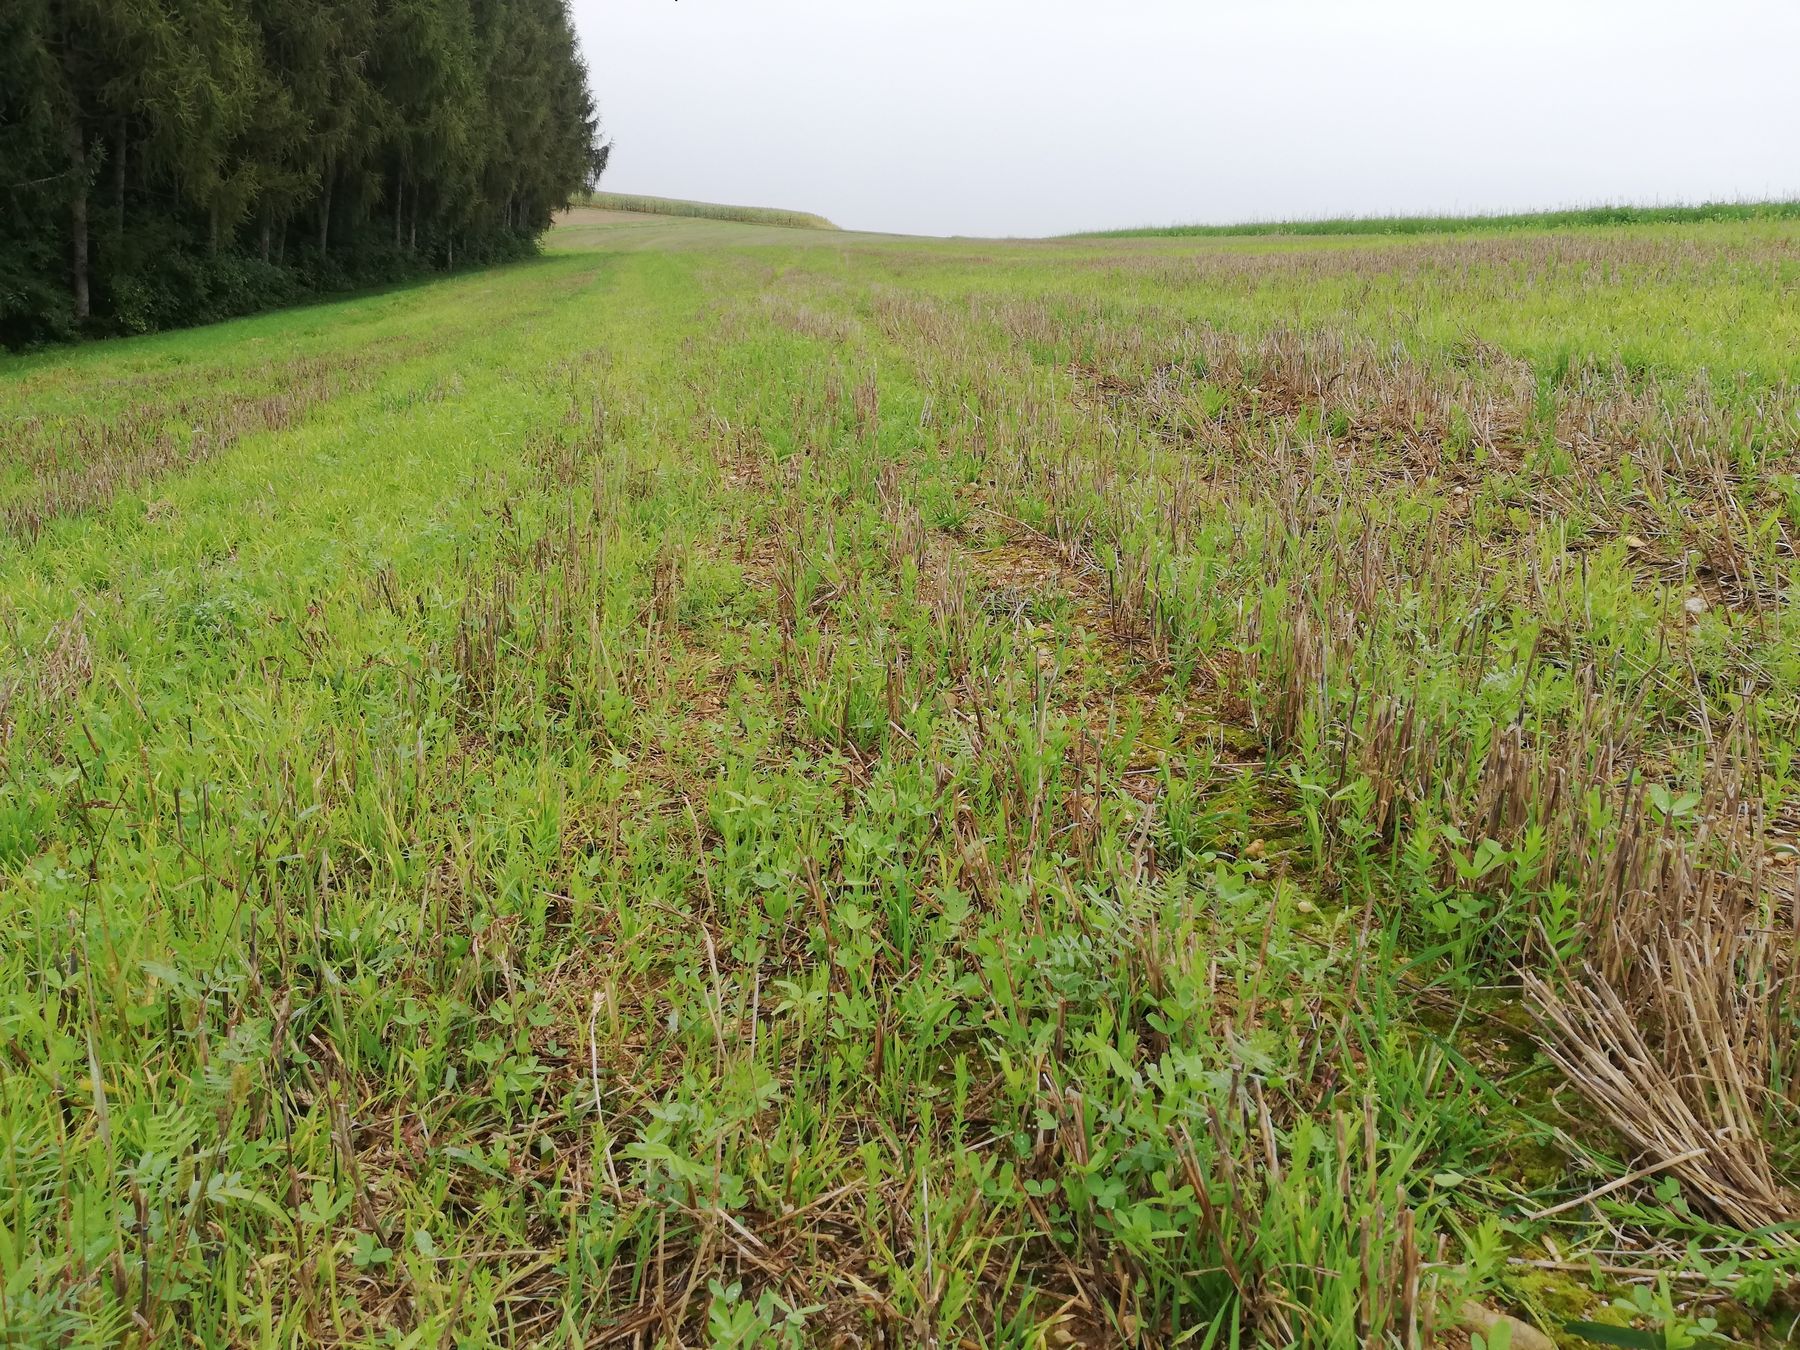 Mähdruschsaat nach Weizen, Ernte 03.08.2021, Foto 22.09.2021 - der Bestand ist noch klein und etwas lückig, aber der Witterung entsprechend gut entwickelt. © BWSB